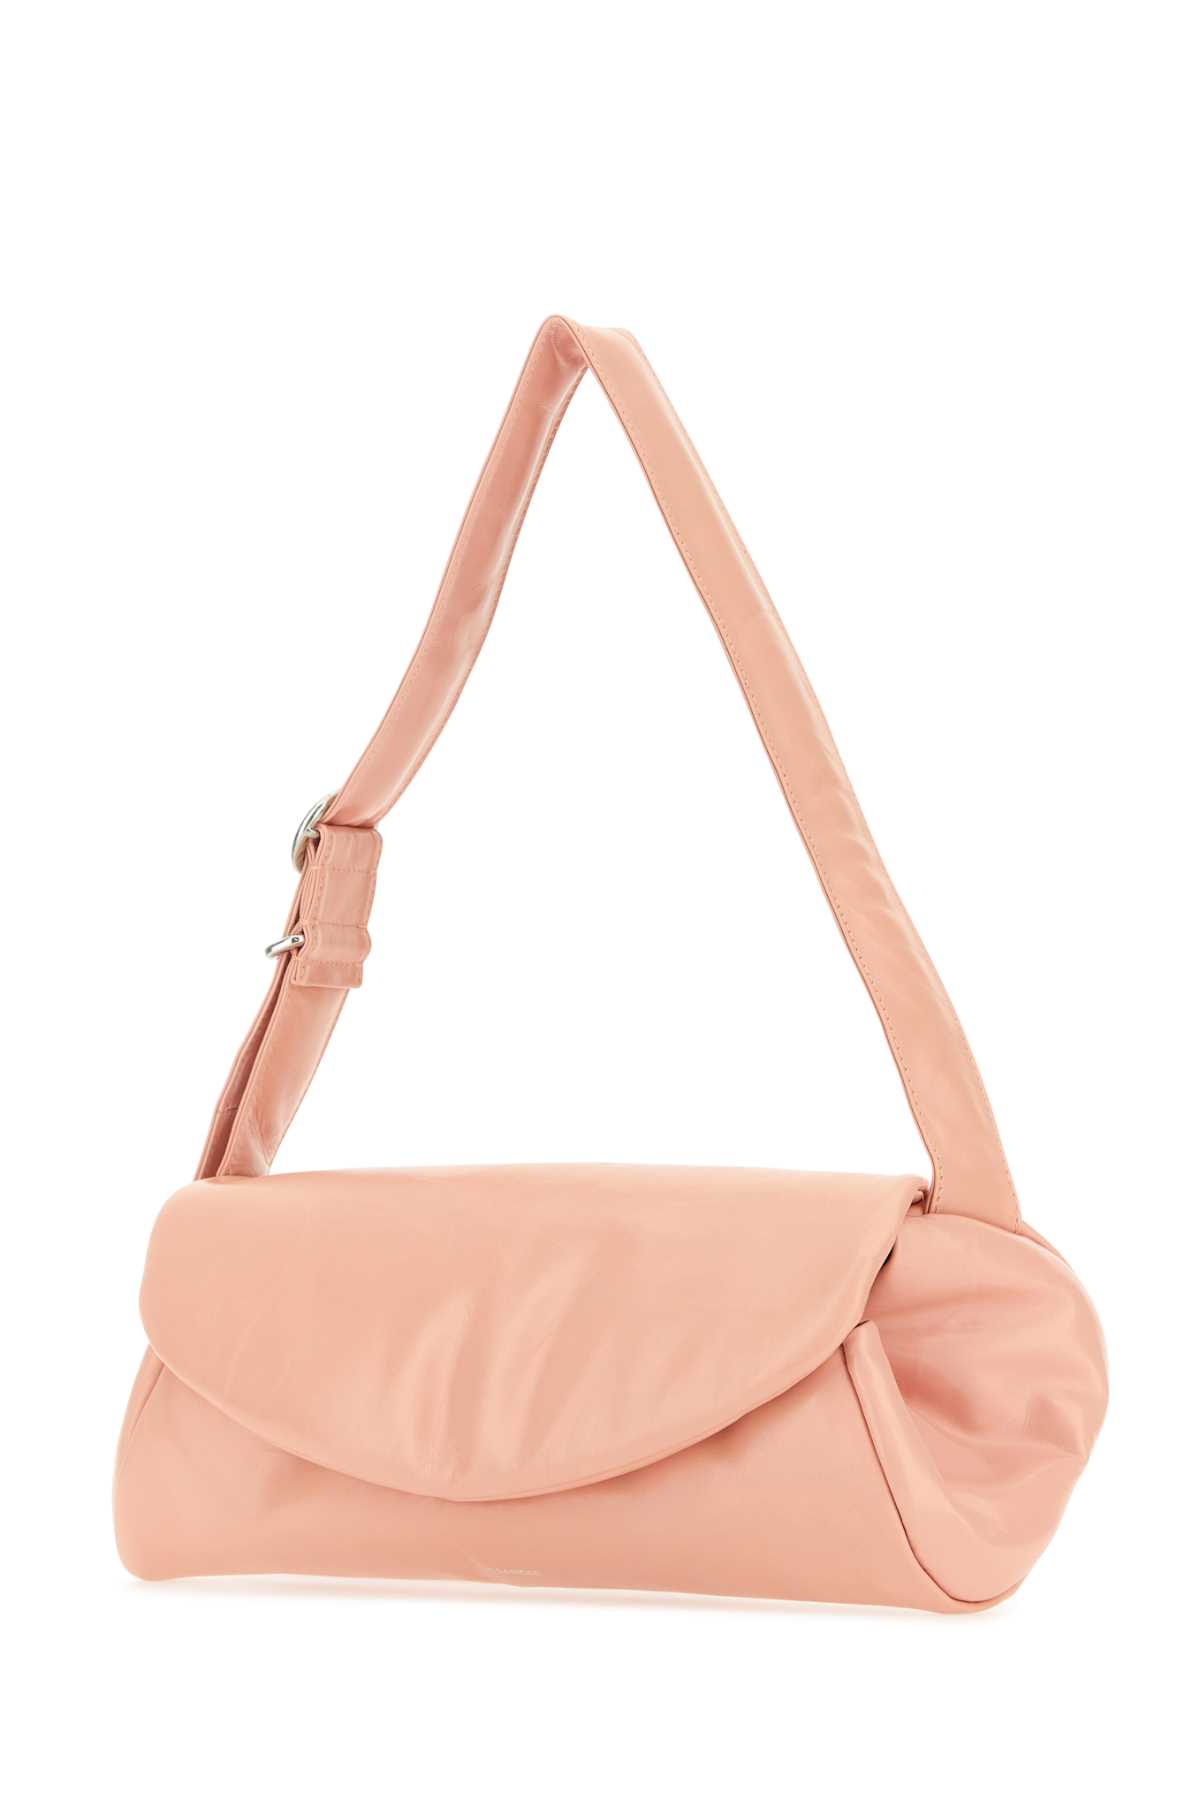 Jil Sander Pink Leather Cannolo Grande Shoulder Bag